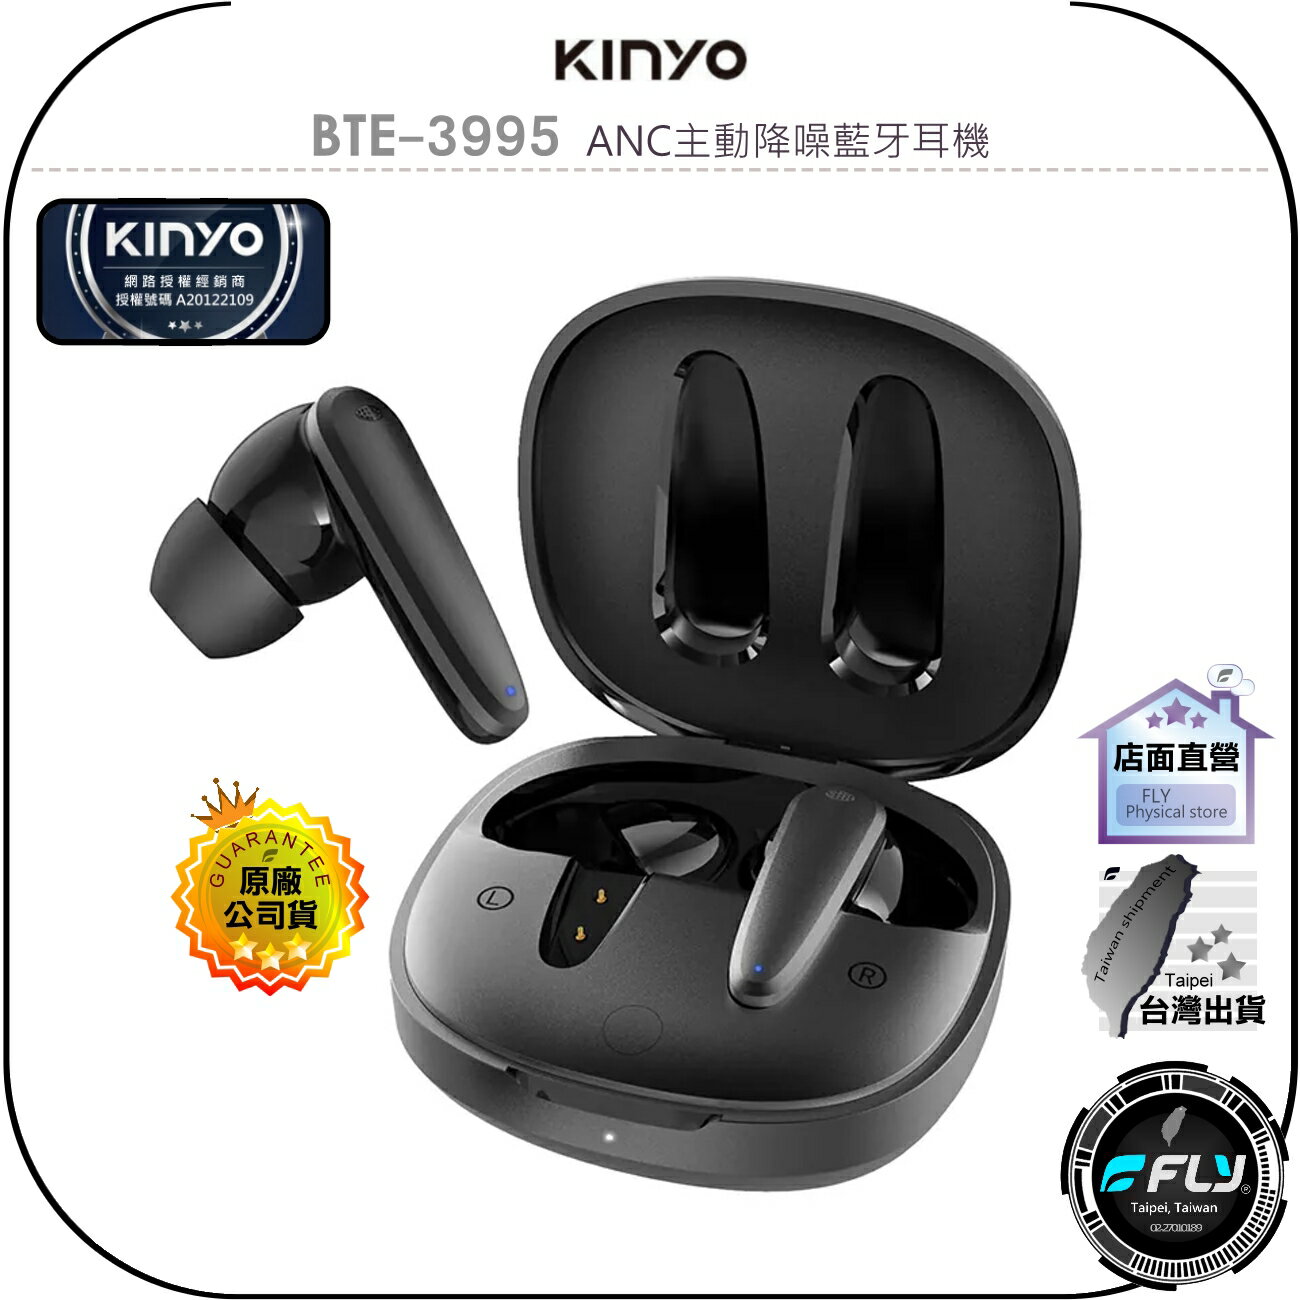 【飛翔商城】KINYO 耐嘉 BTE-3995 ANC主動降噪藍牙耳機◉公司貨◉藍芽通話◉通透模式◉智慧降噪◉單耳切換